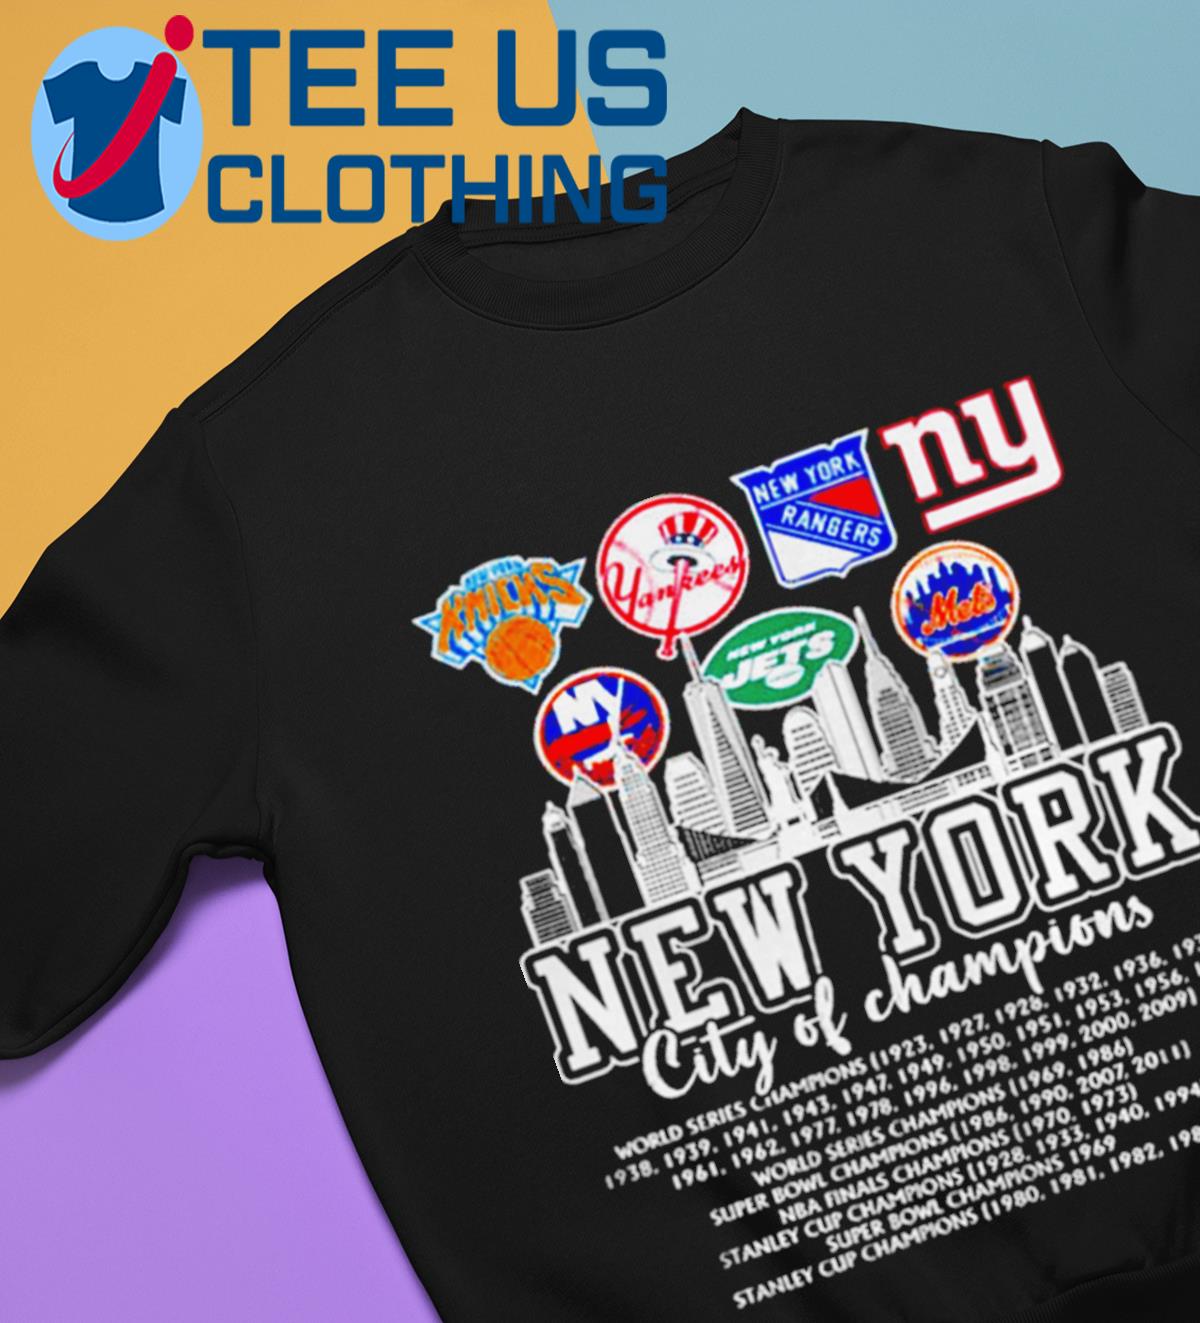 1927 New York Yankees World Champions T-shirt,Sweater, Hoodie, And